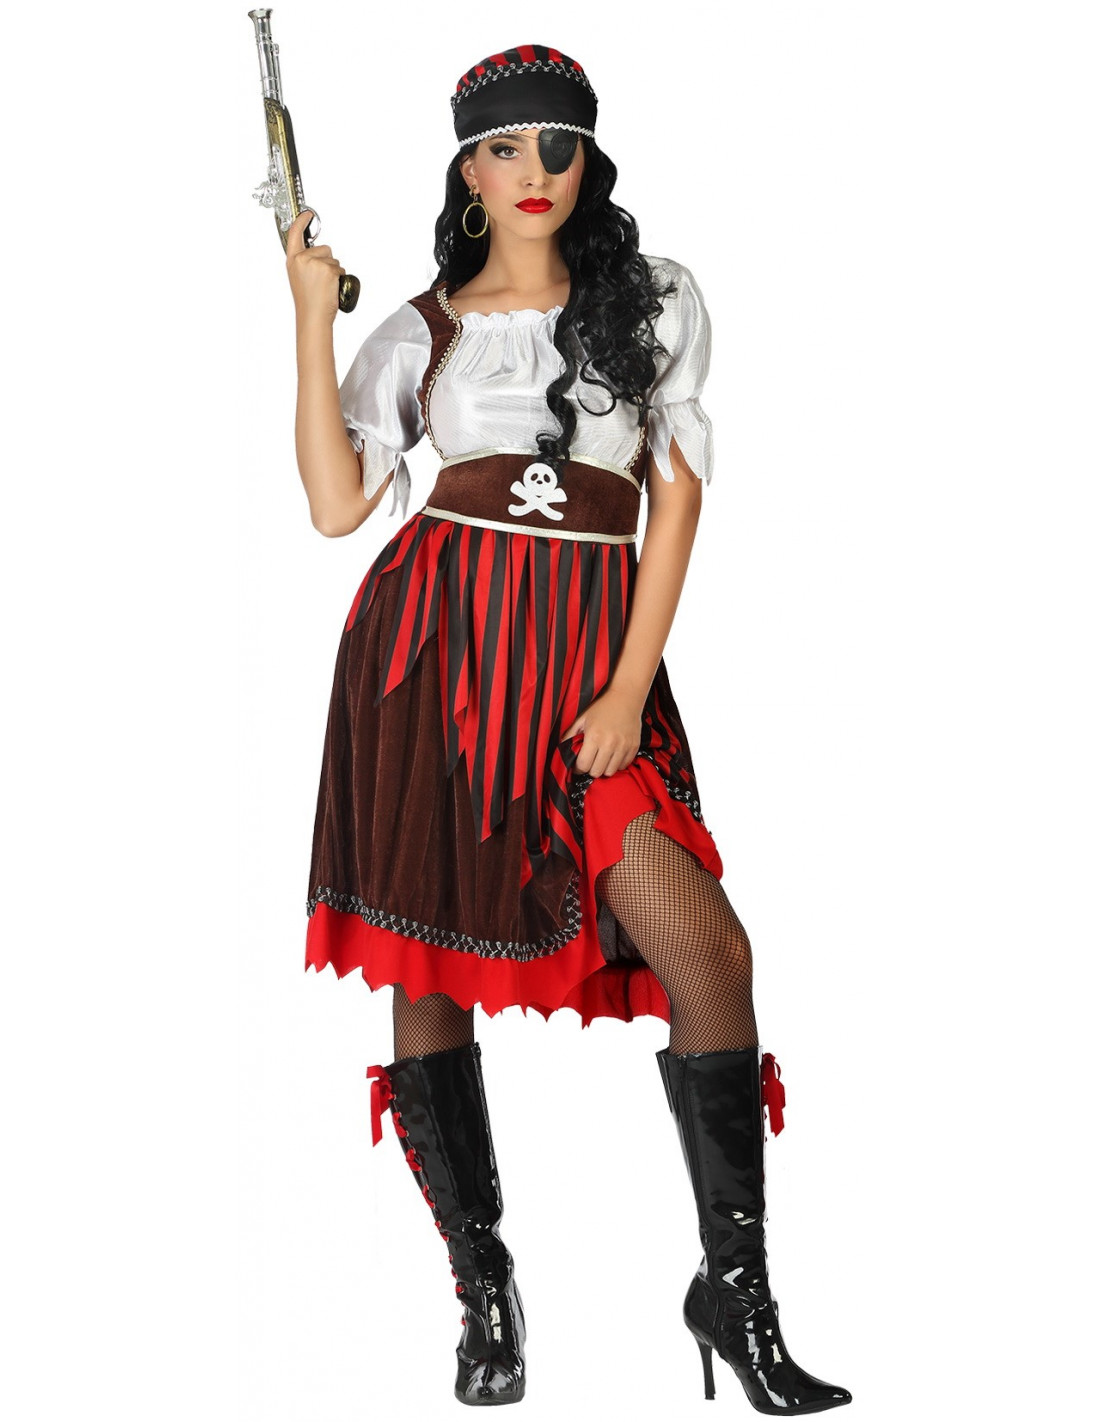 Disfraz de pirata mujer para adulto barato. Tienda de disfraces online